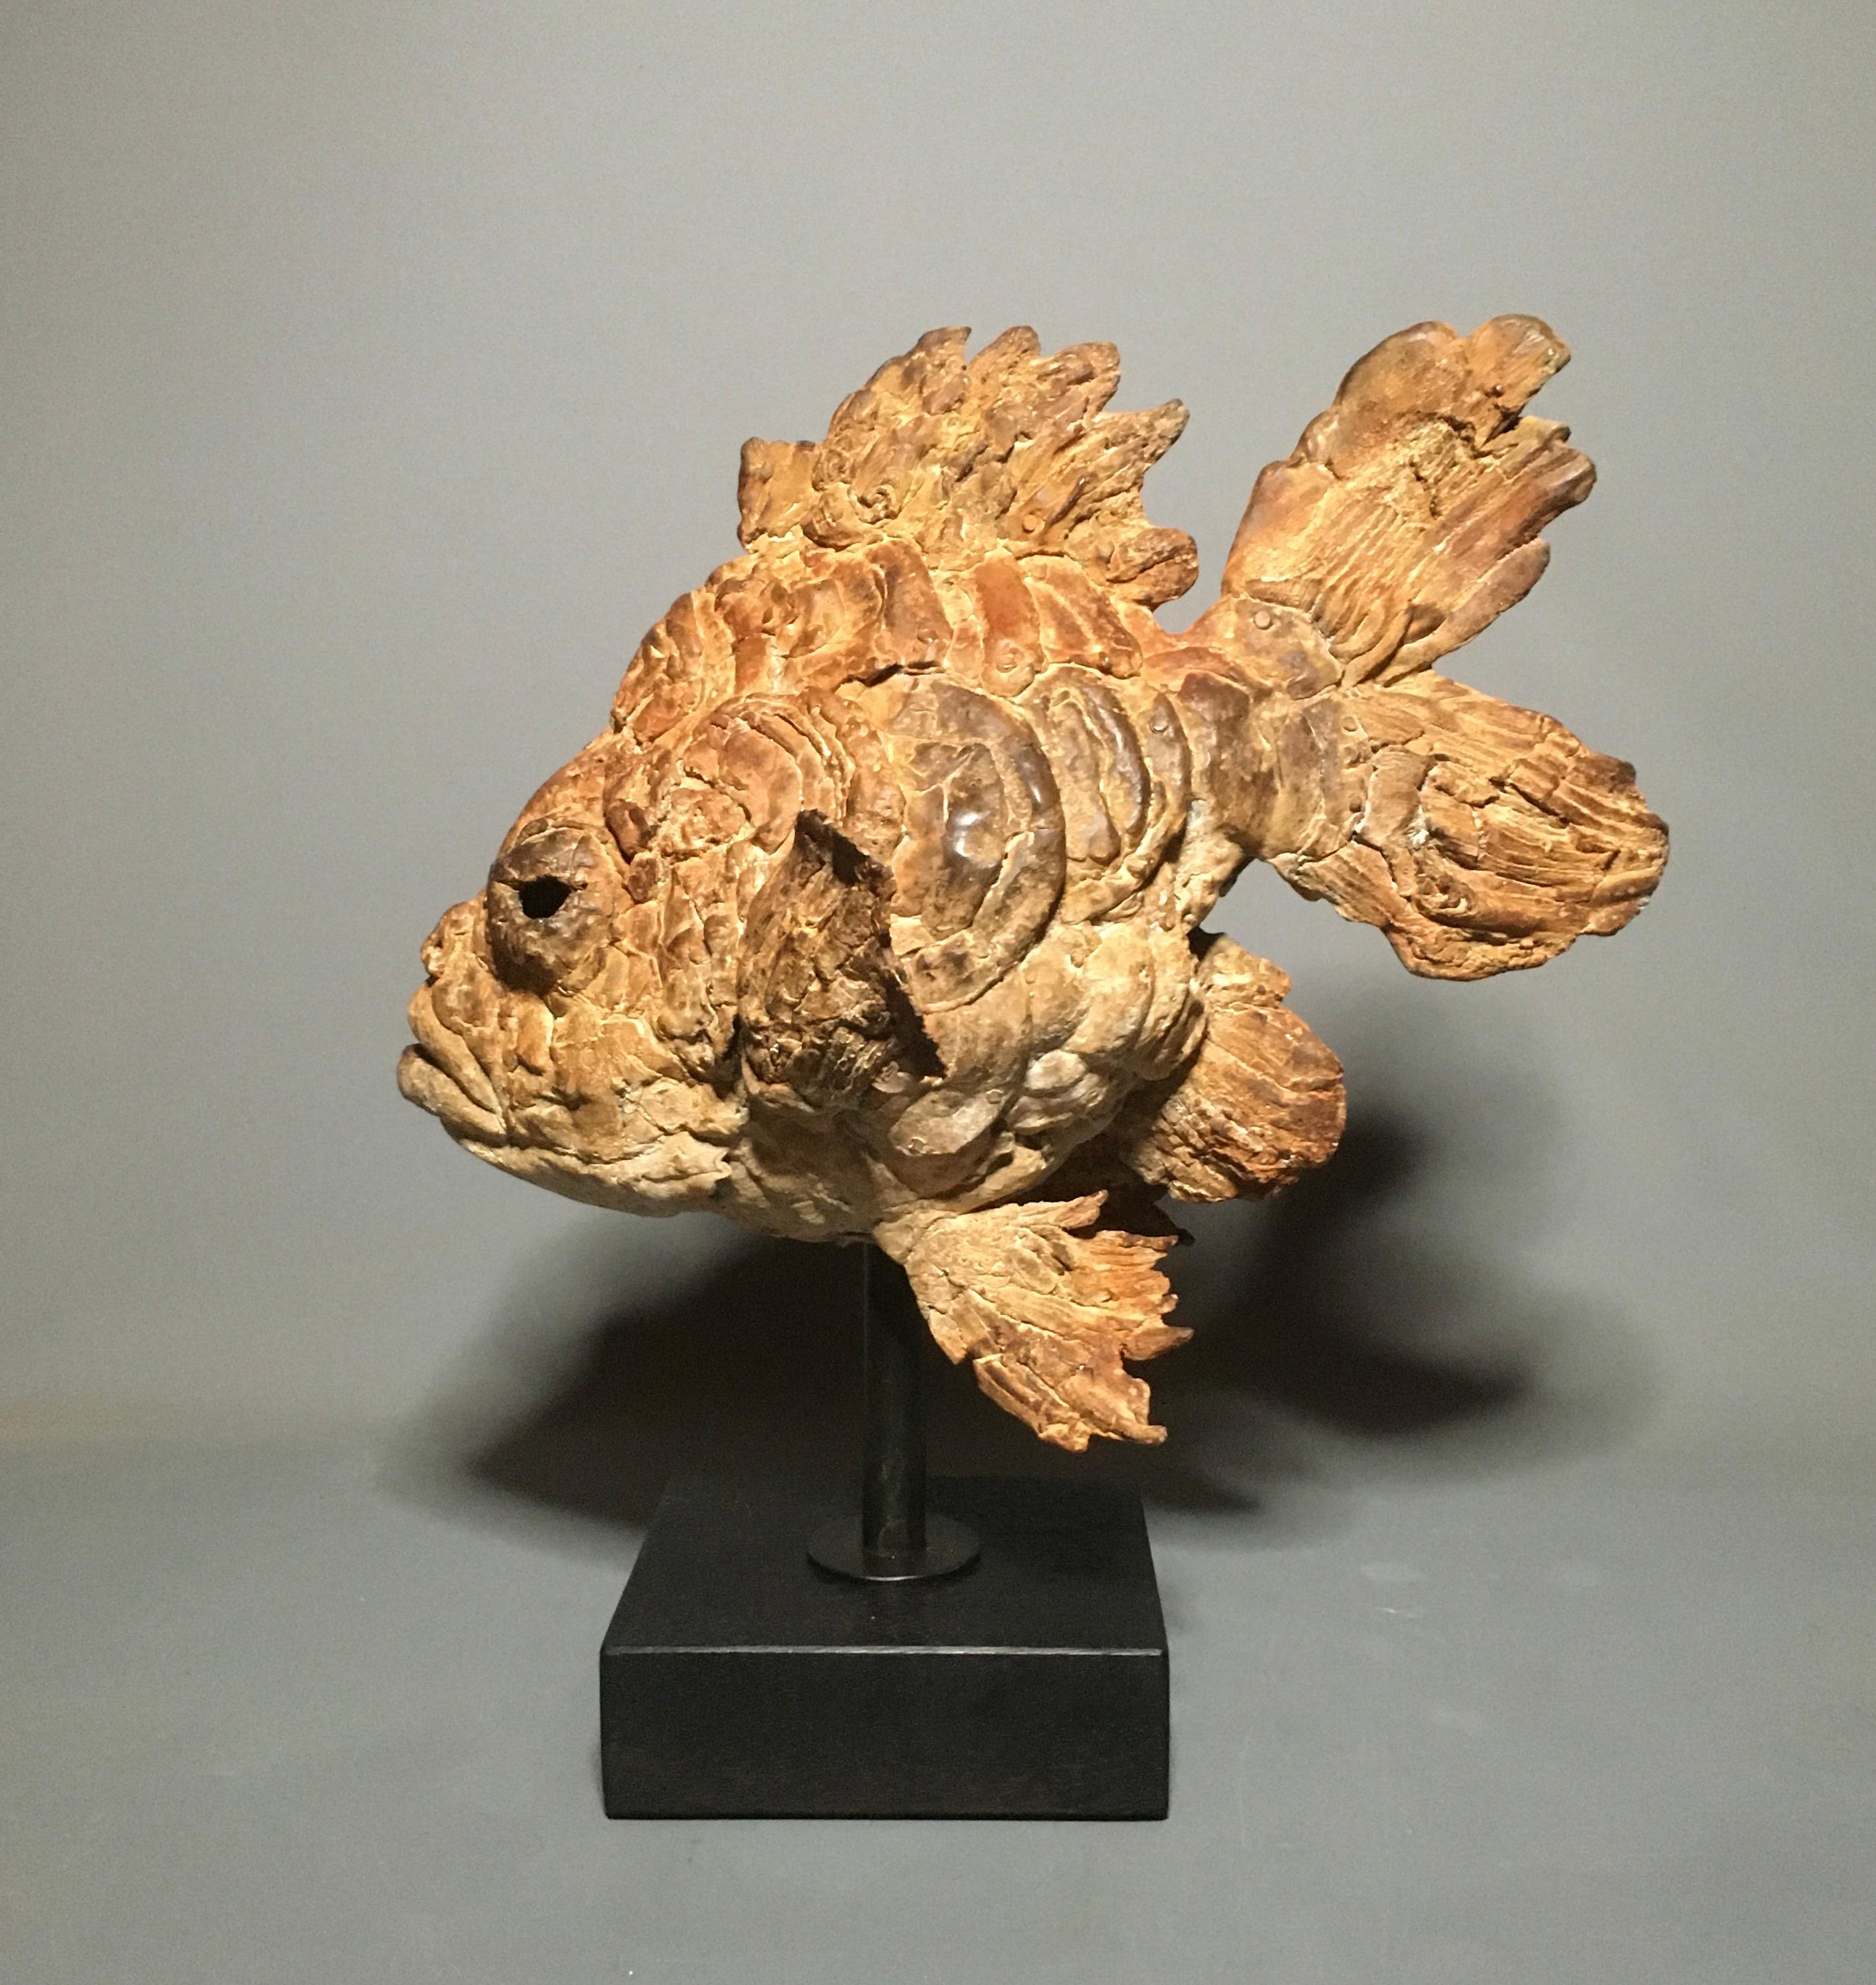 Pieter Vanden Daele Figurative Sculpture - Arlequino Bronze Sculpture Fish Animal Water Brown Contemporary  In Stock 